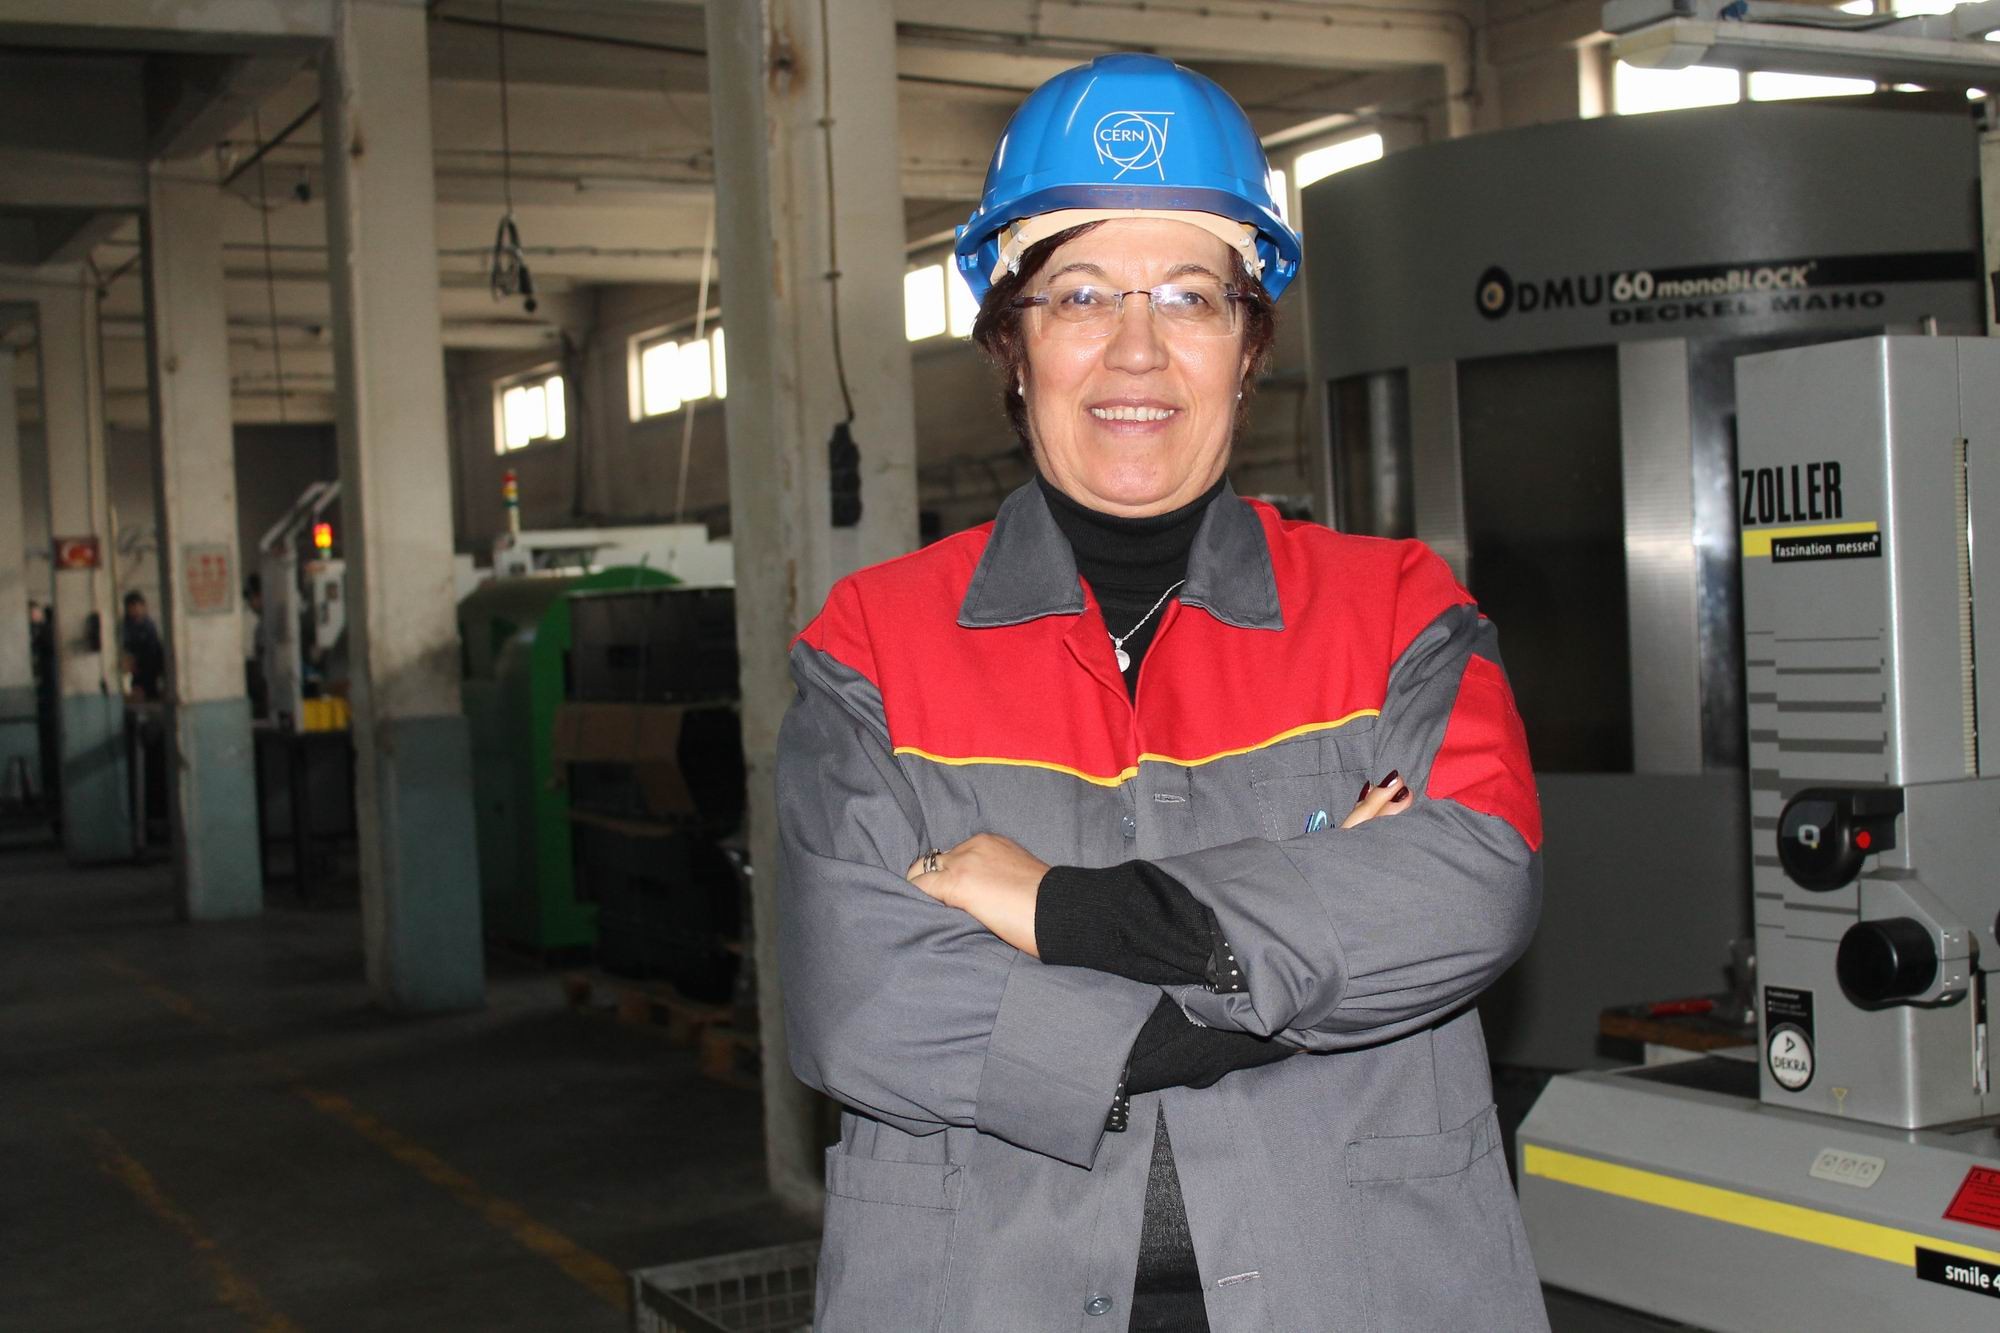 Kayserili kadın girişimci, 2023’e kadar CERN’e parça üretecek